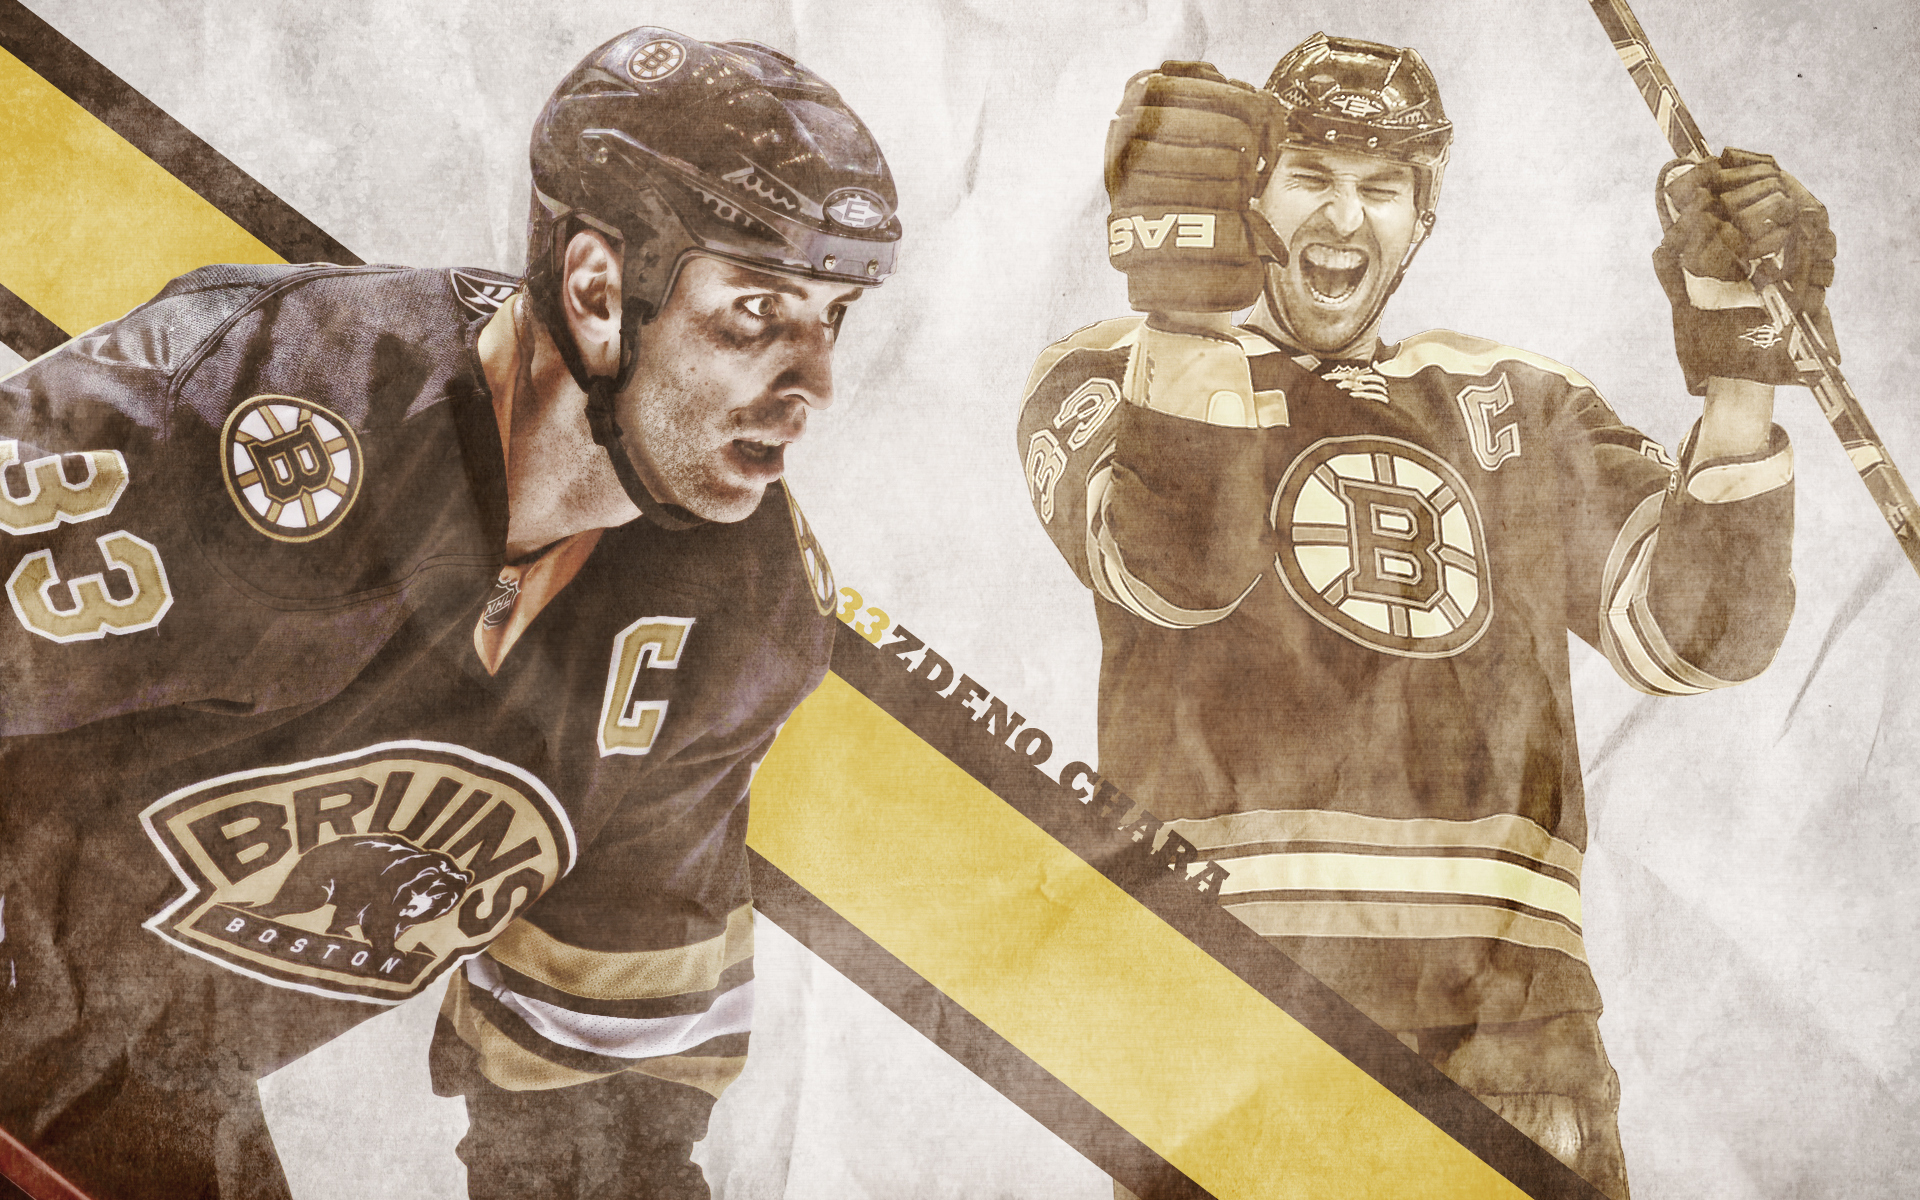 Boston Bruins Image Zdeno Chara HD Wallpaper And